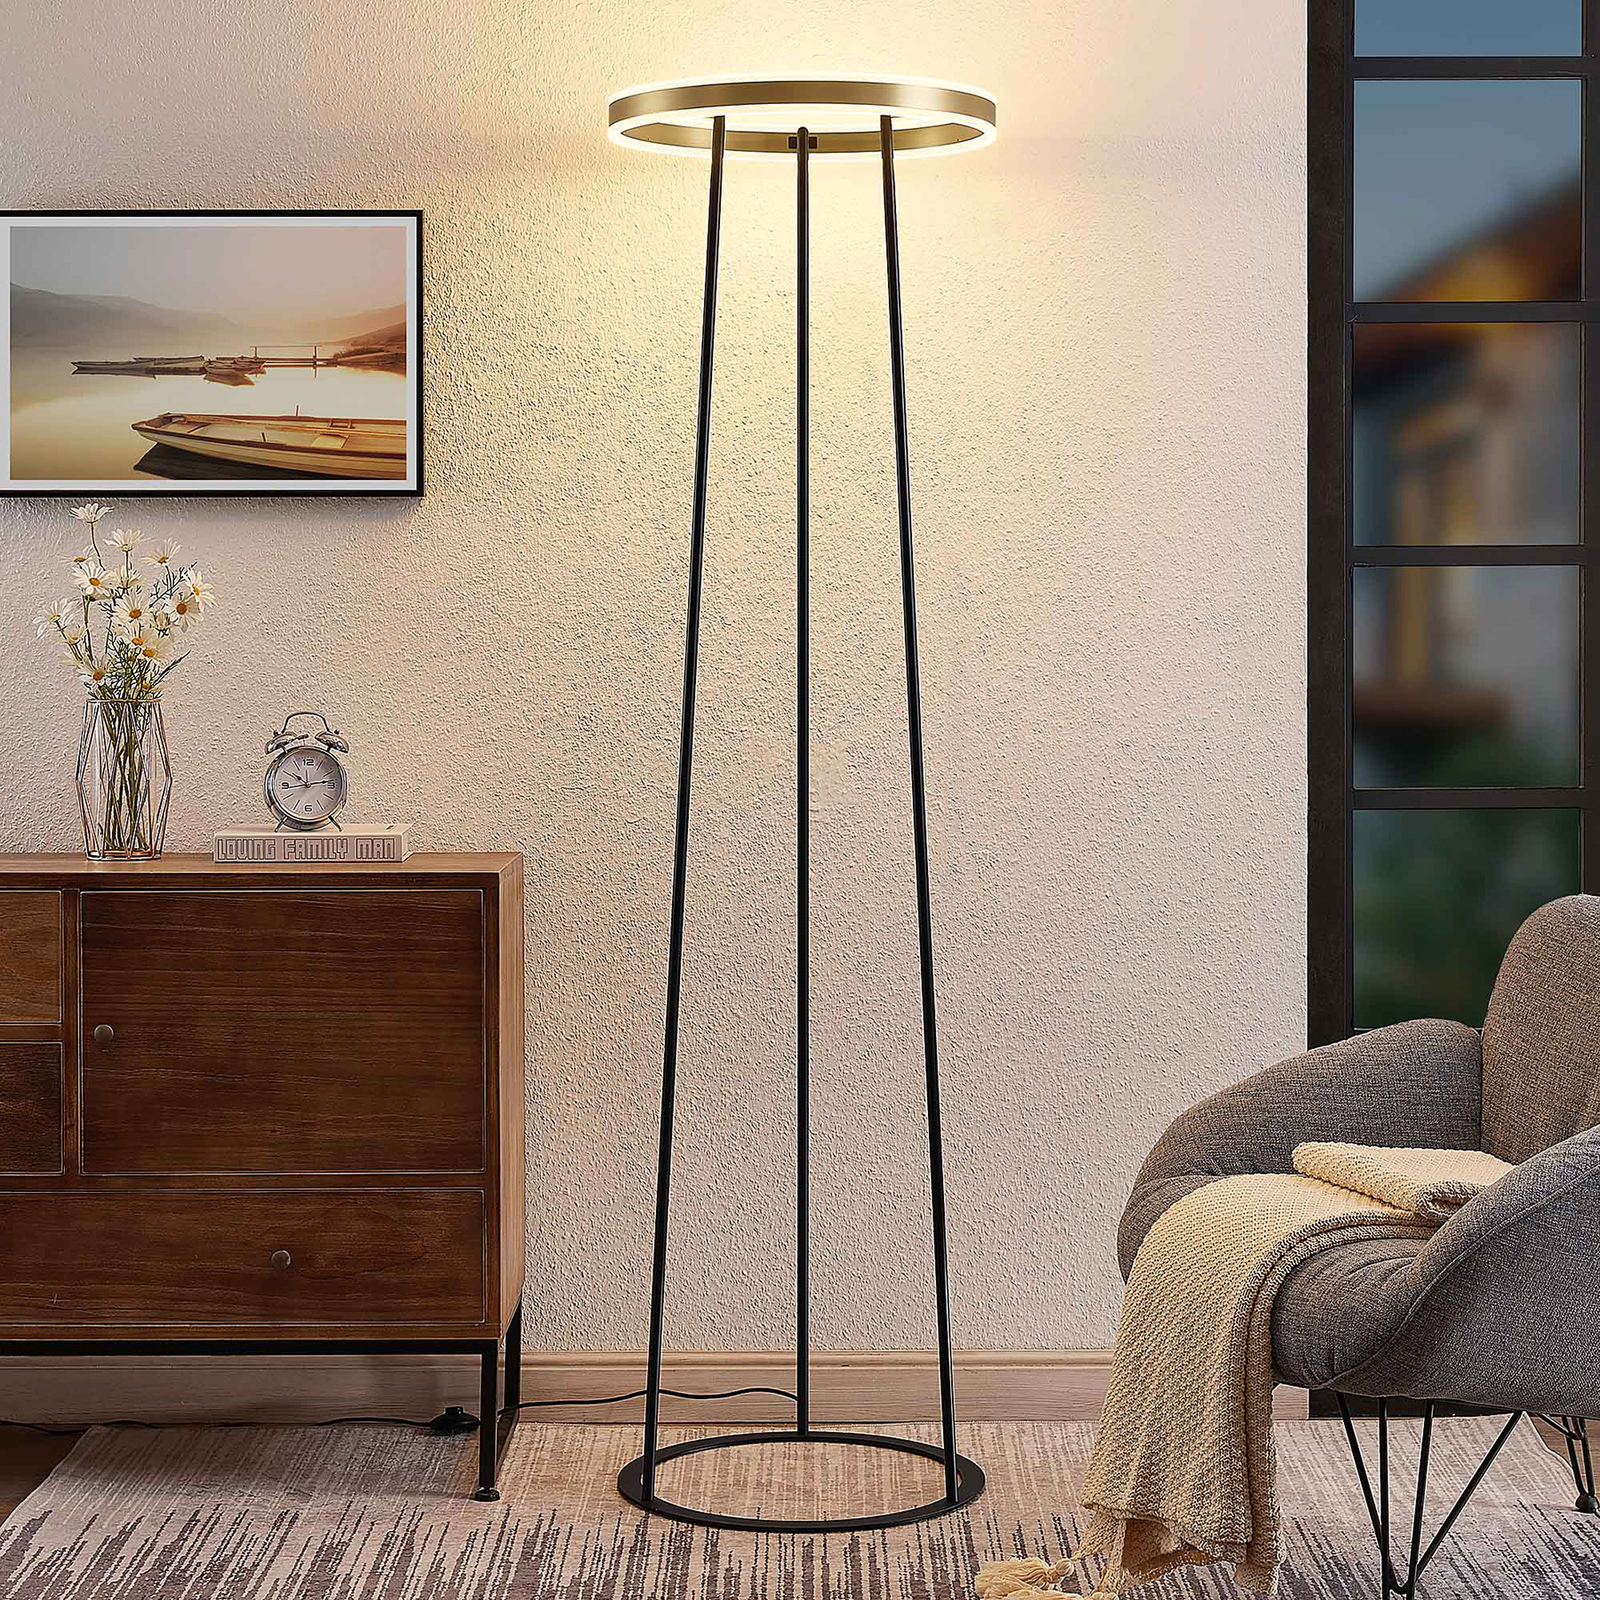 Lucande Seppe LED stojací lampa, Ø 50 cm, mosaz